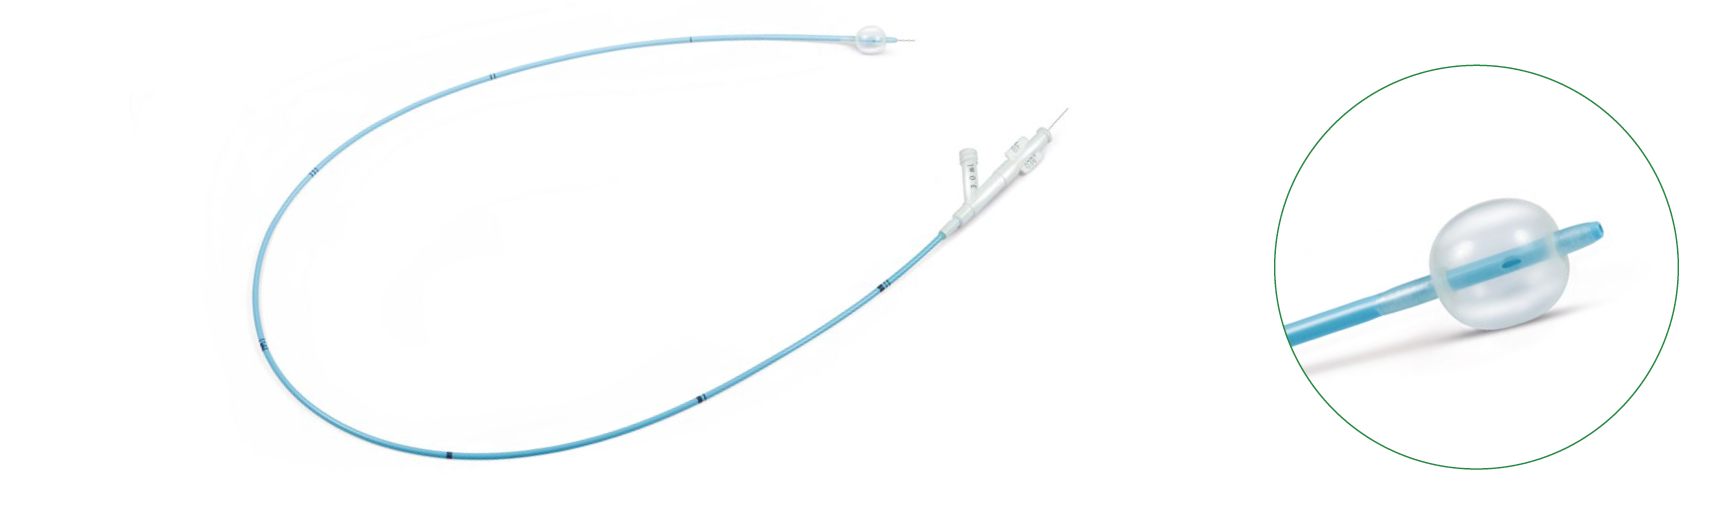 Катетер для эмболэктомии и тромбэктомии, двухпросветный, совместимый с проводником